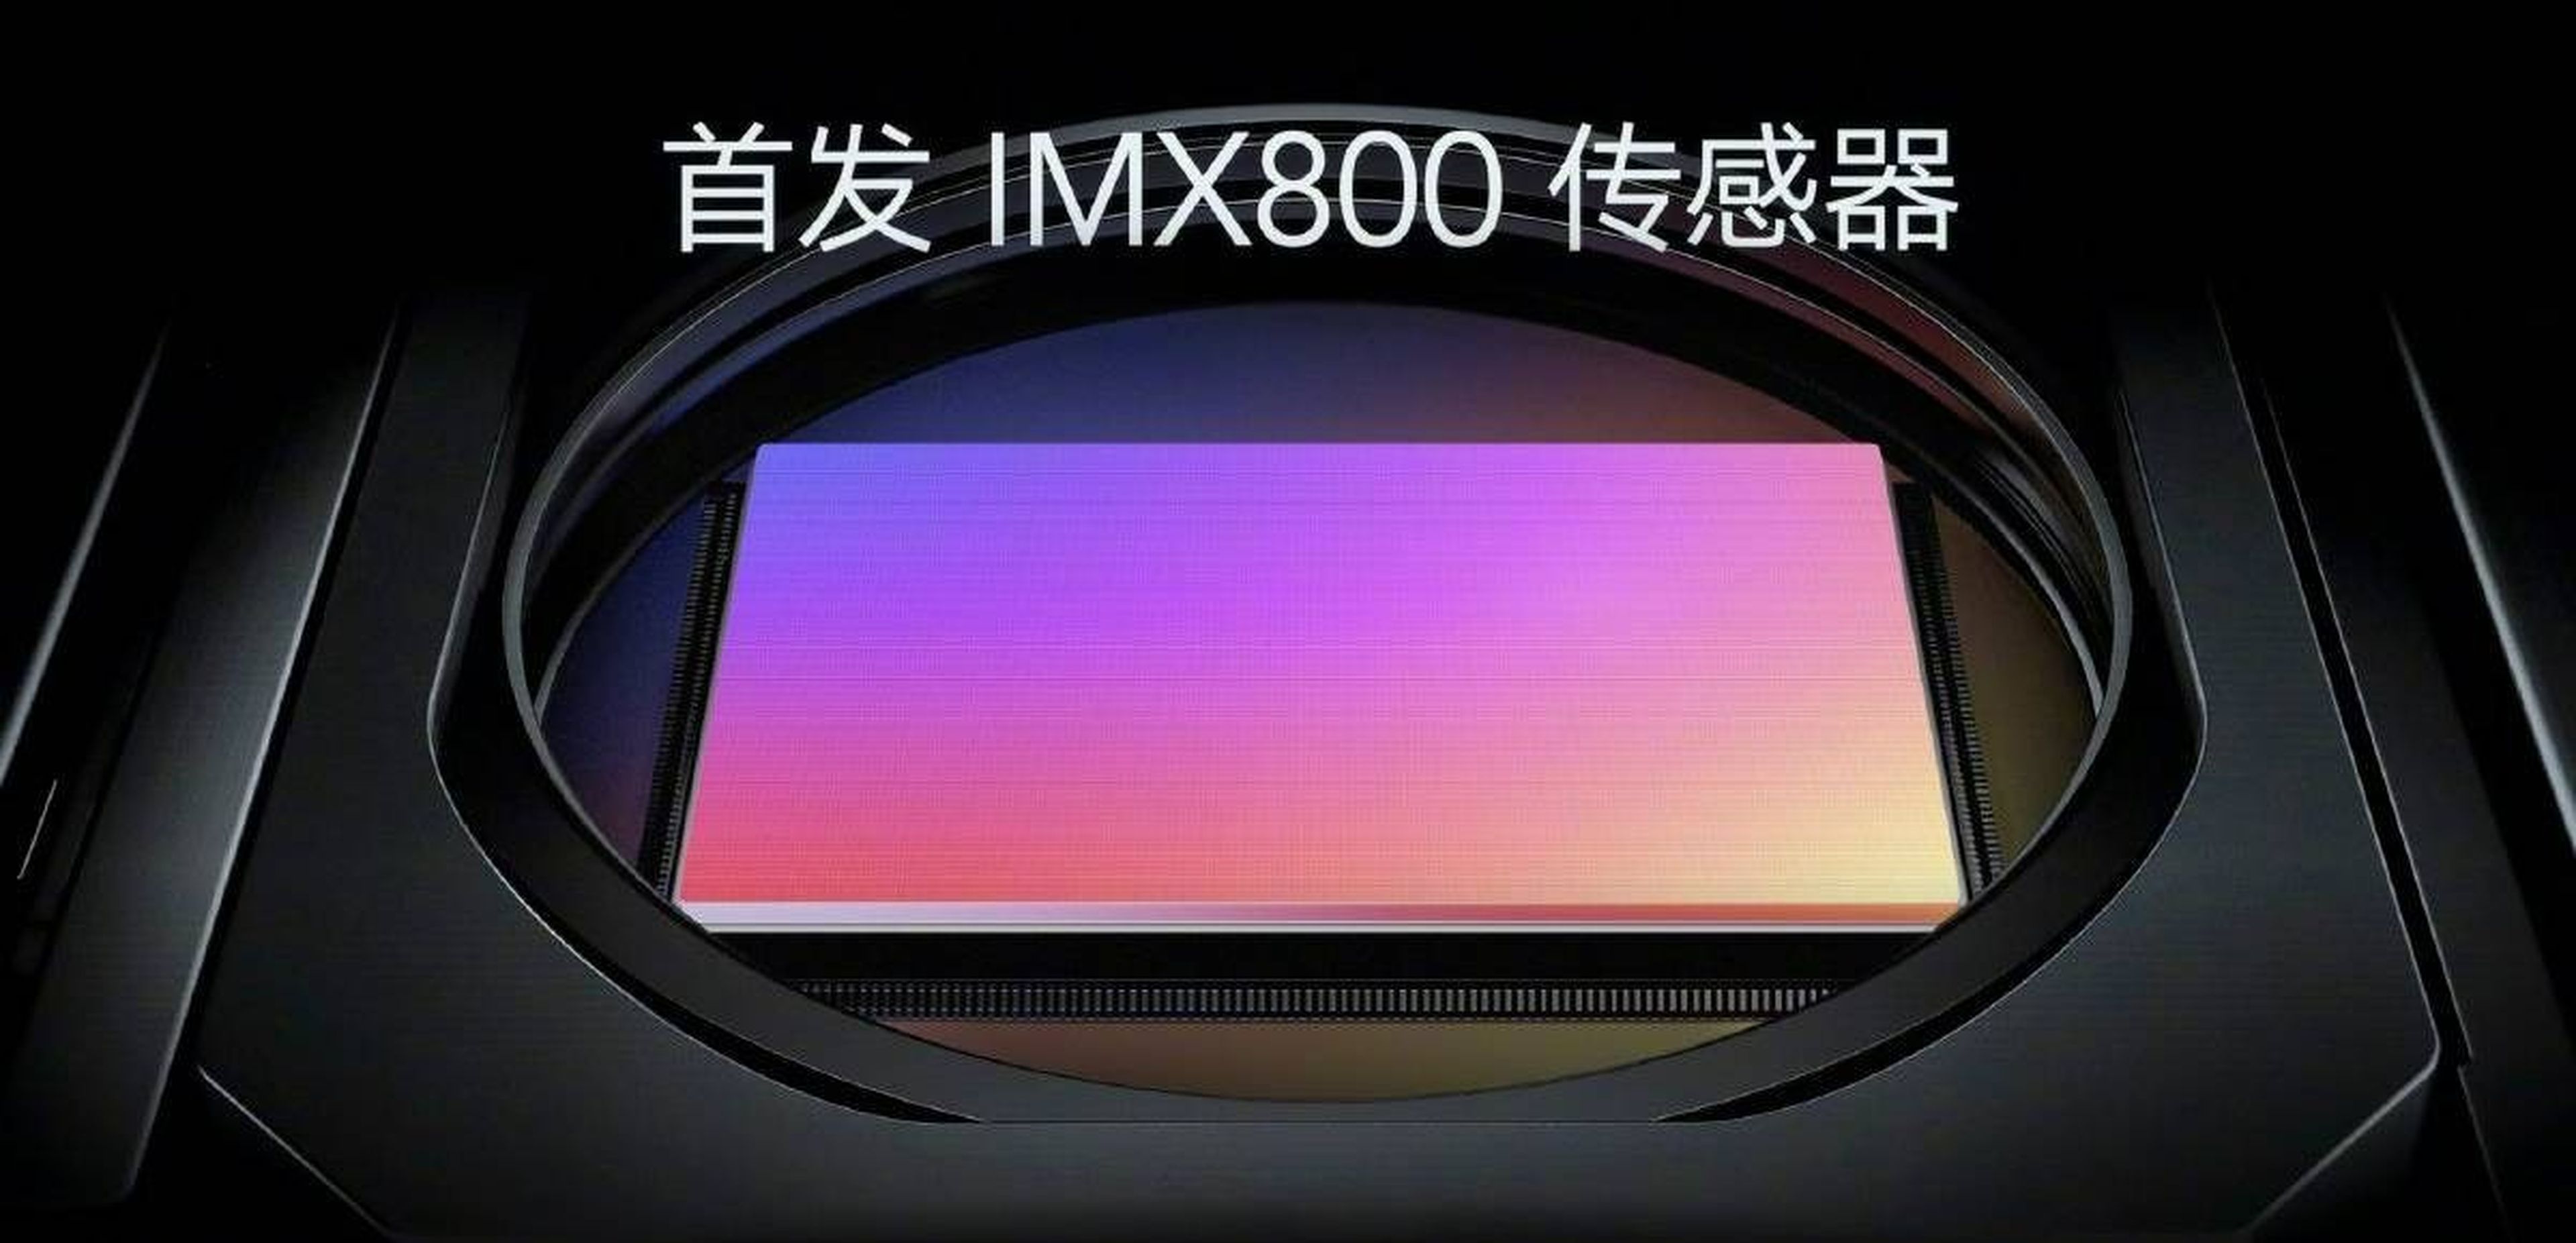 Así es el sensor Sony IMX800 de 54 Mpx que poblará la gama alta de smartphones en 2022